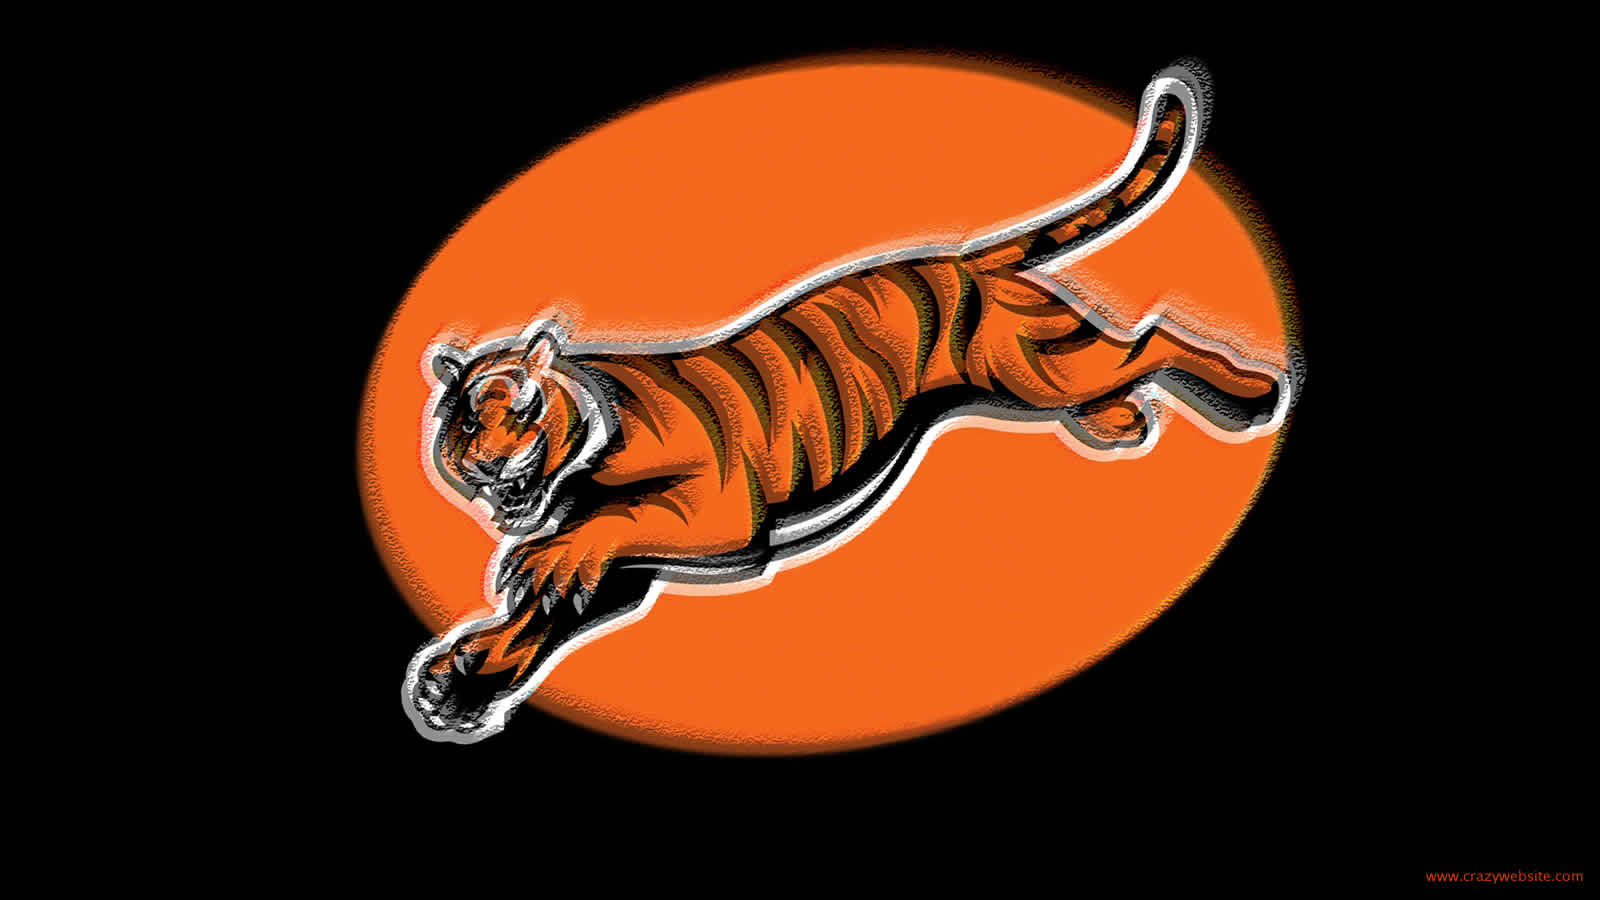 Cincinnati Bengals football team tiger logo wallpaper click thumbnail 1600x900